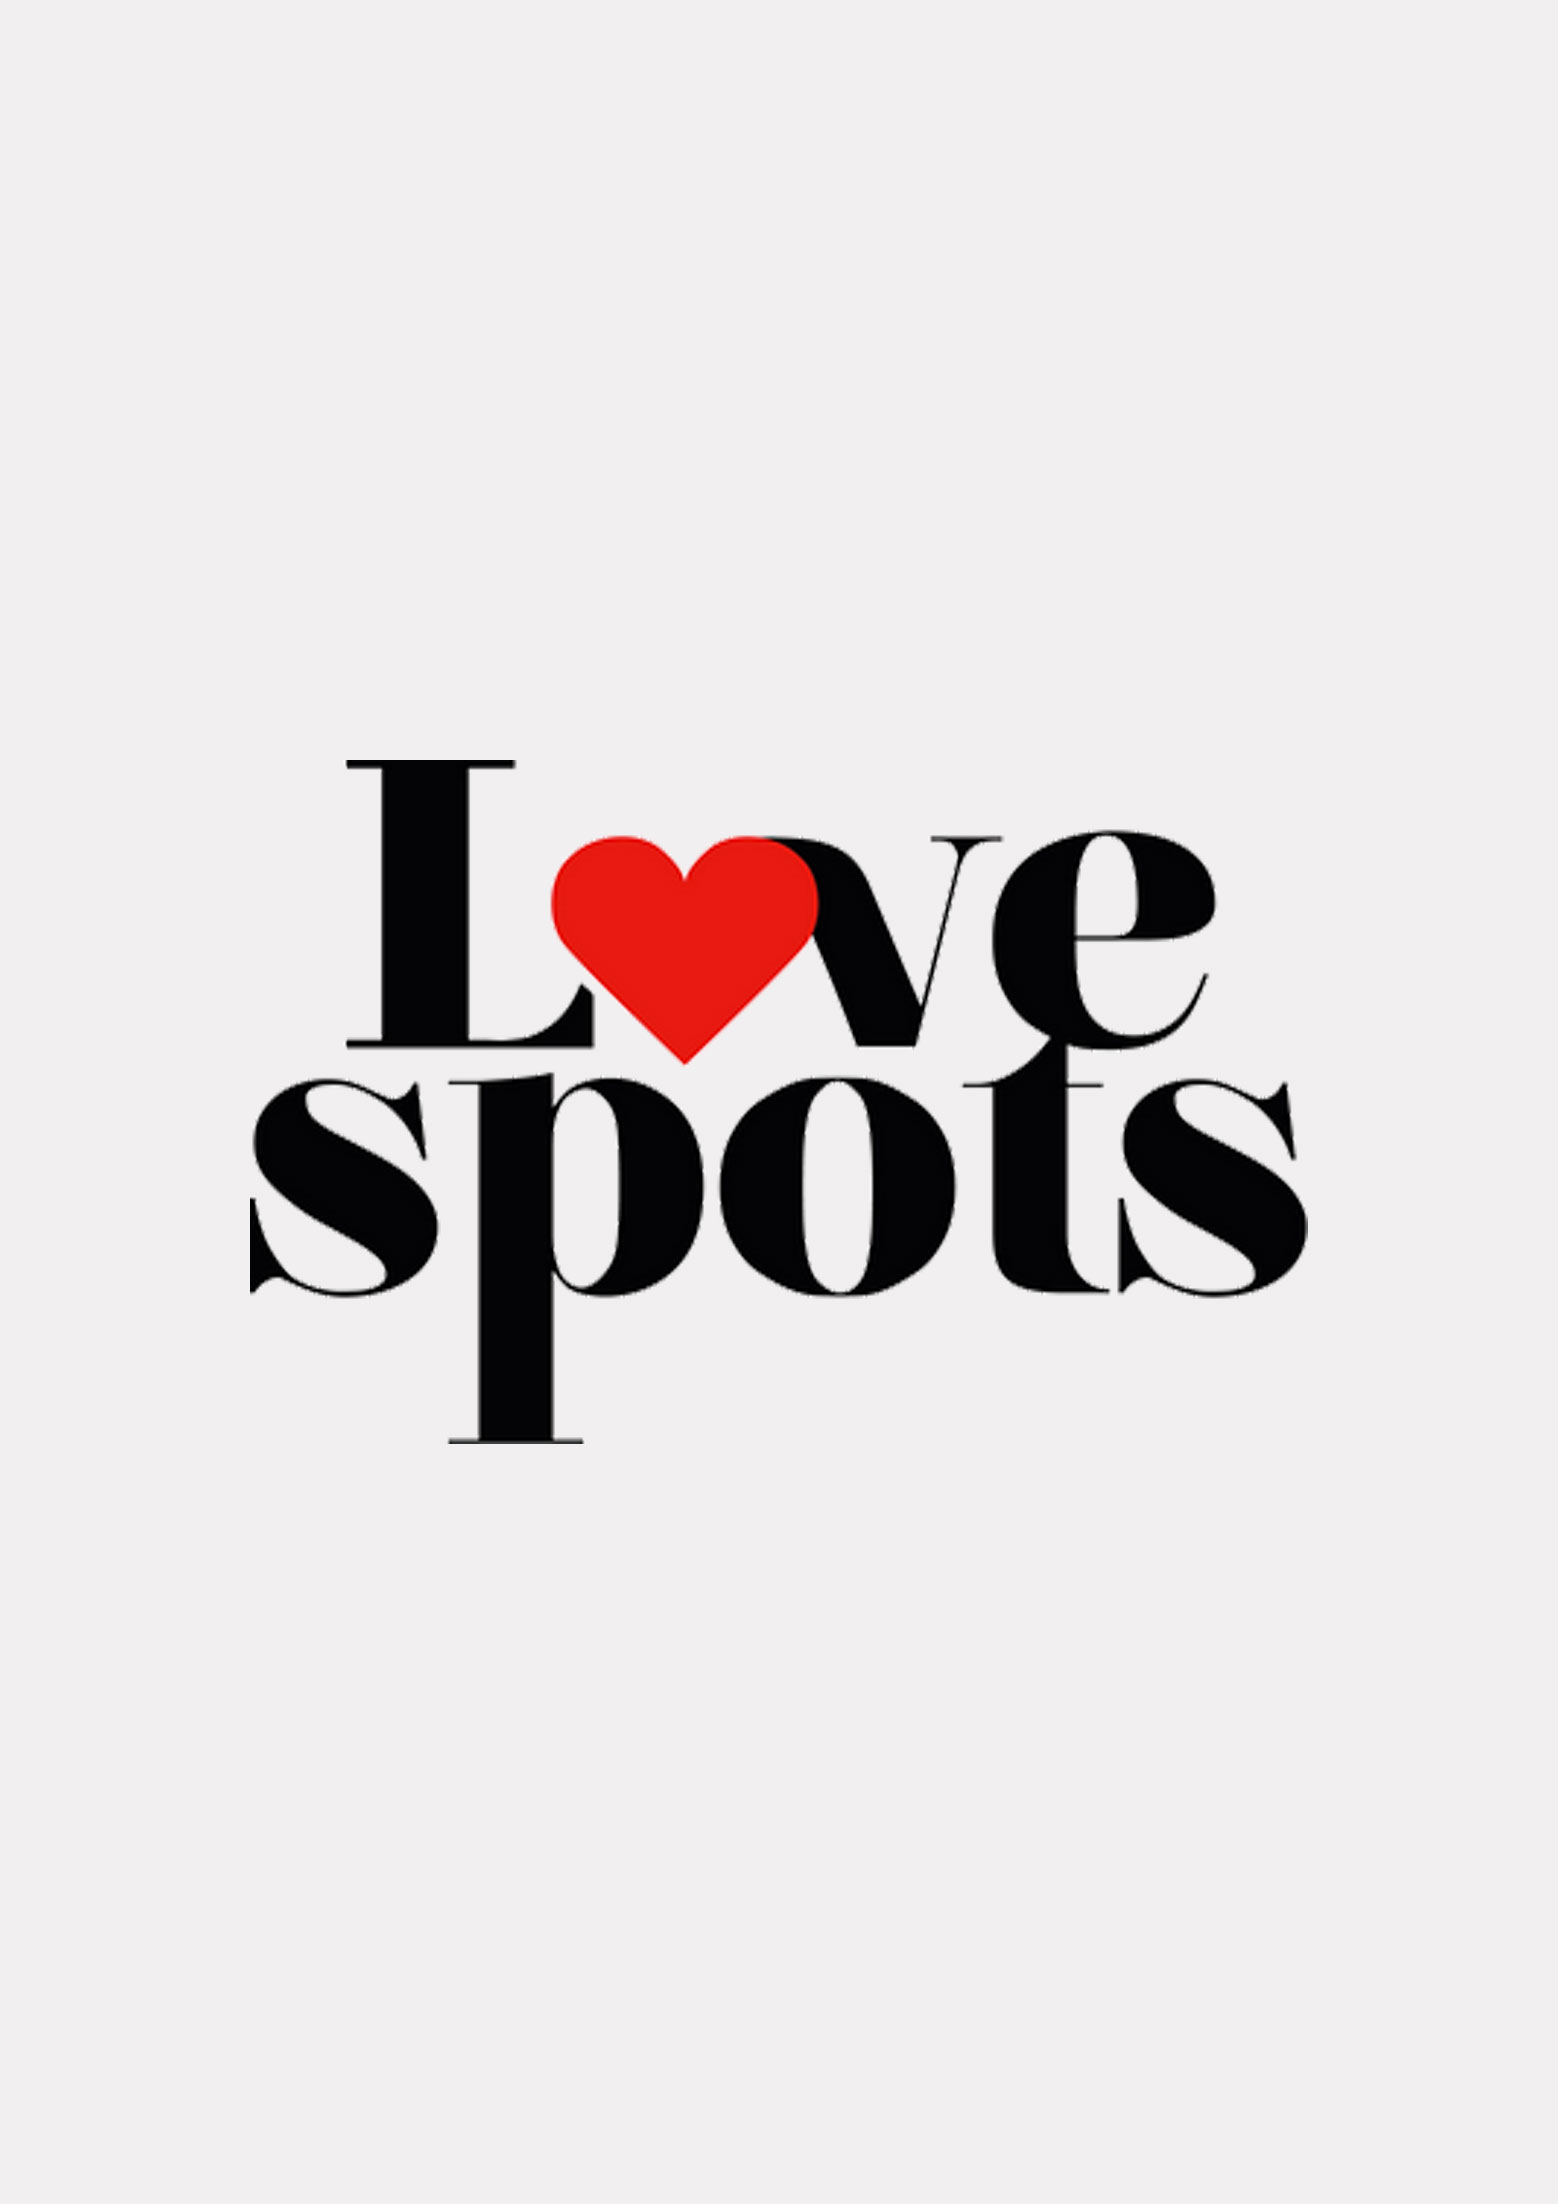 Love spots